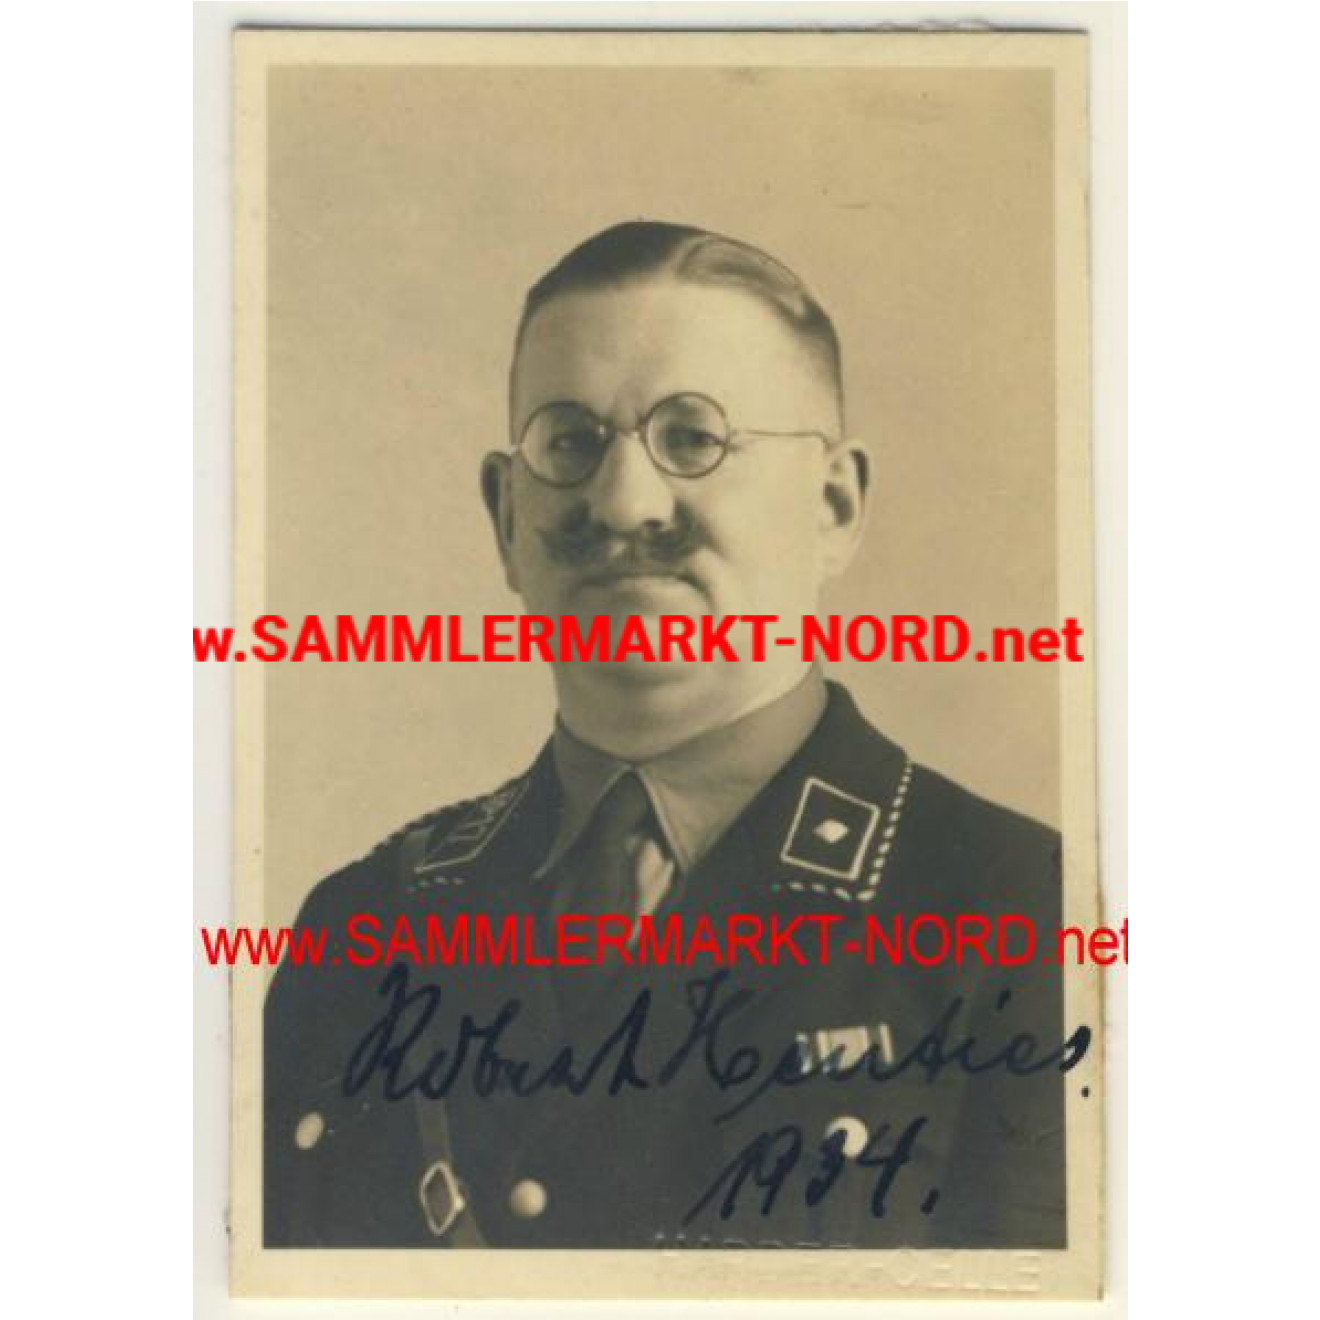 SS - Unterscharführer of the General SS (Banner 17)